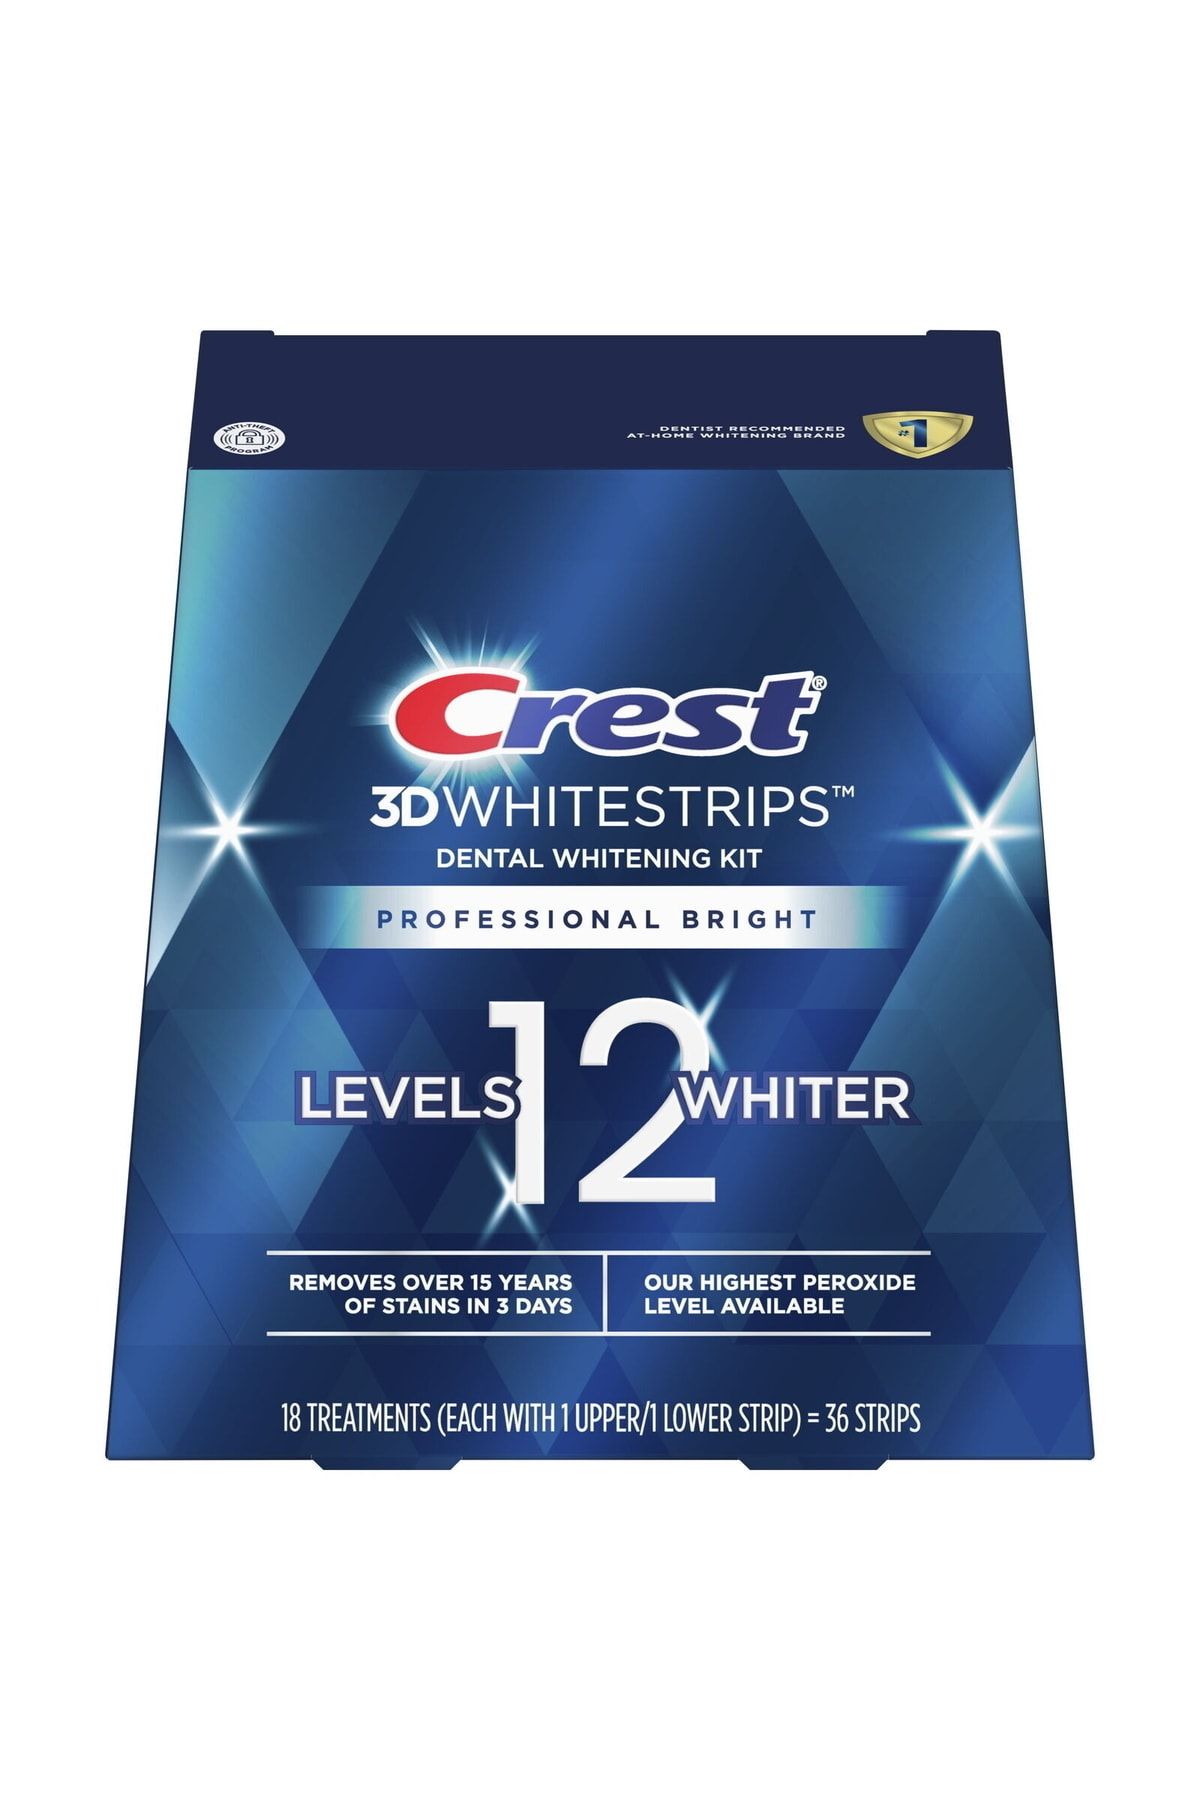 CREST 3d Whitestrips Dental Whitening Kit 18paket 36bant